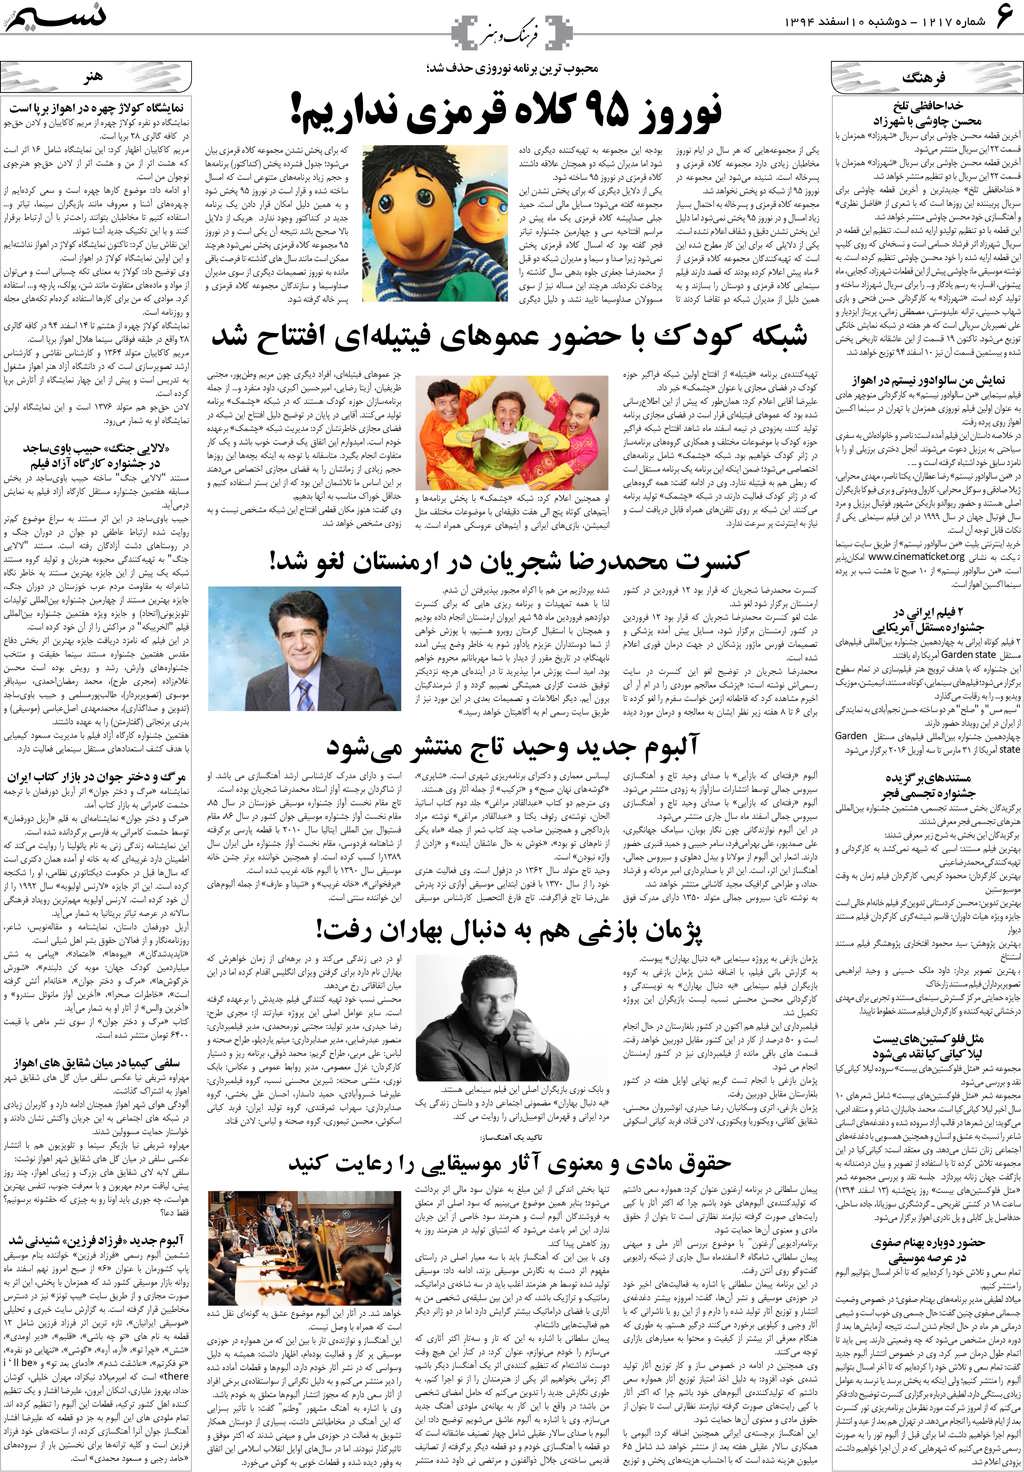 صفحه فرهنگ و هنر روزنامه نسیم شماره 1217